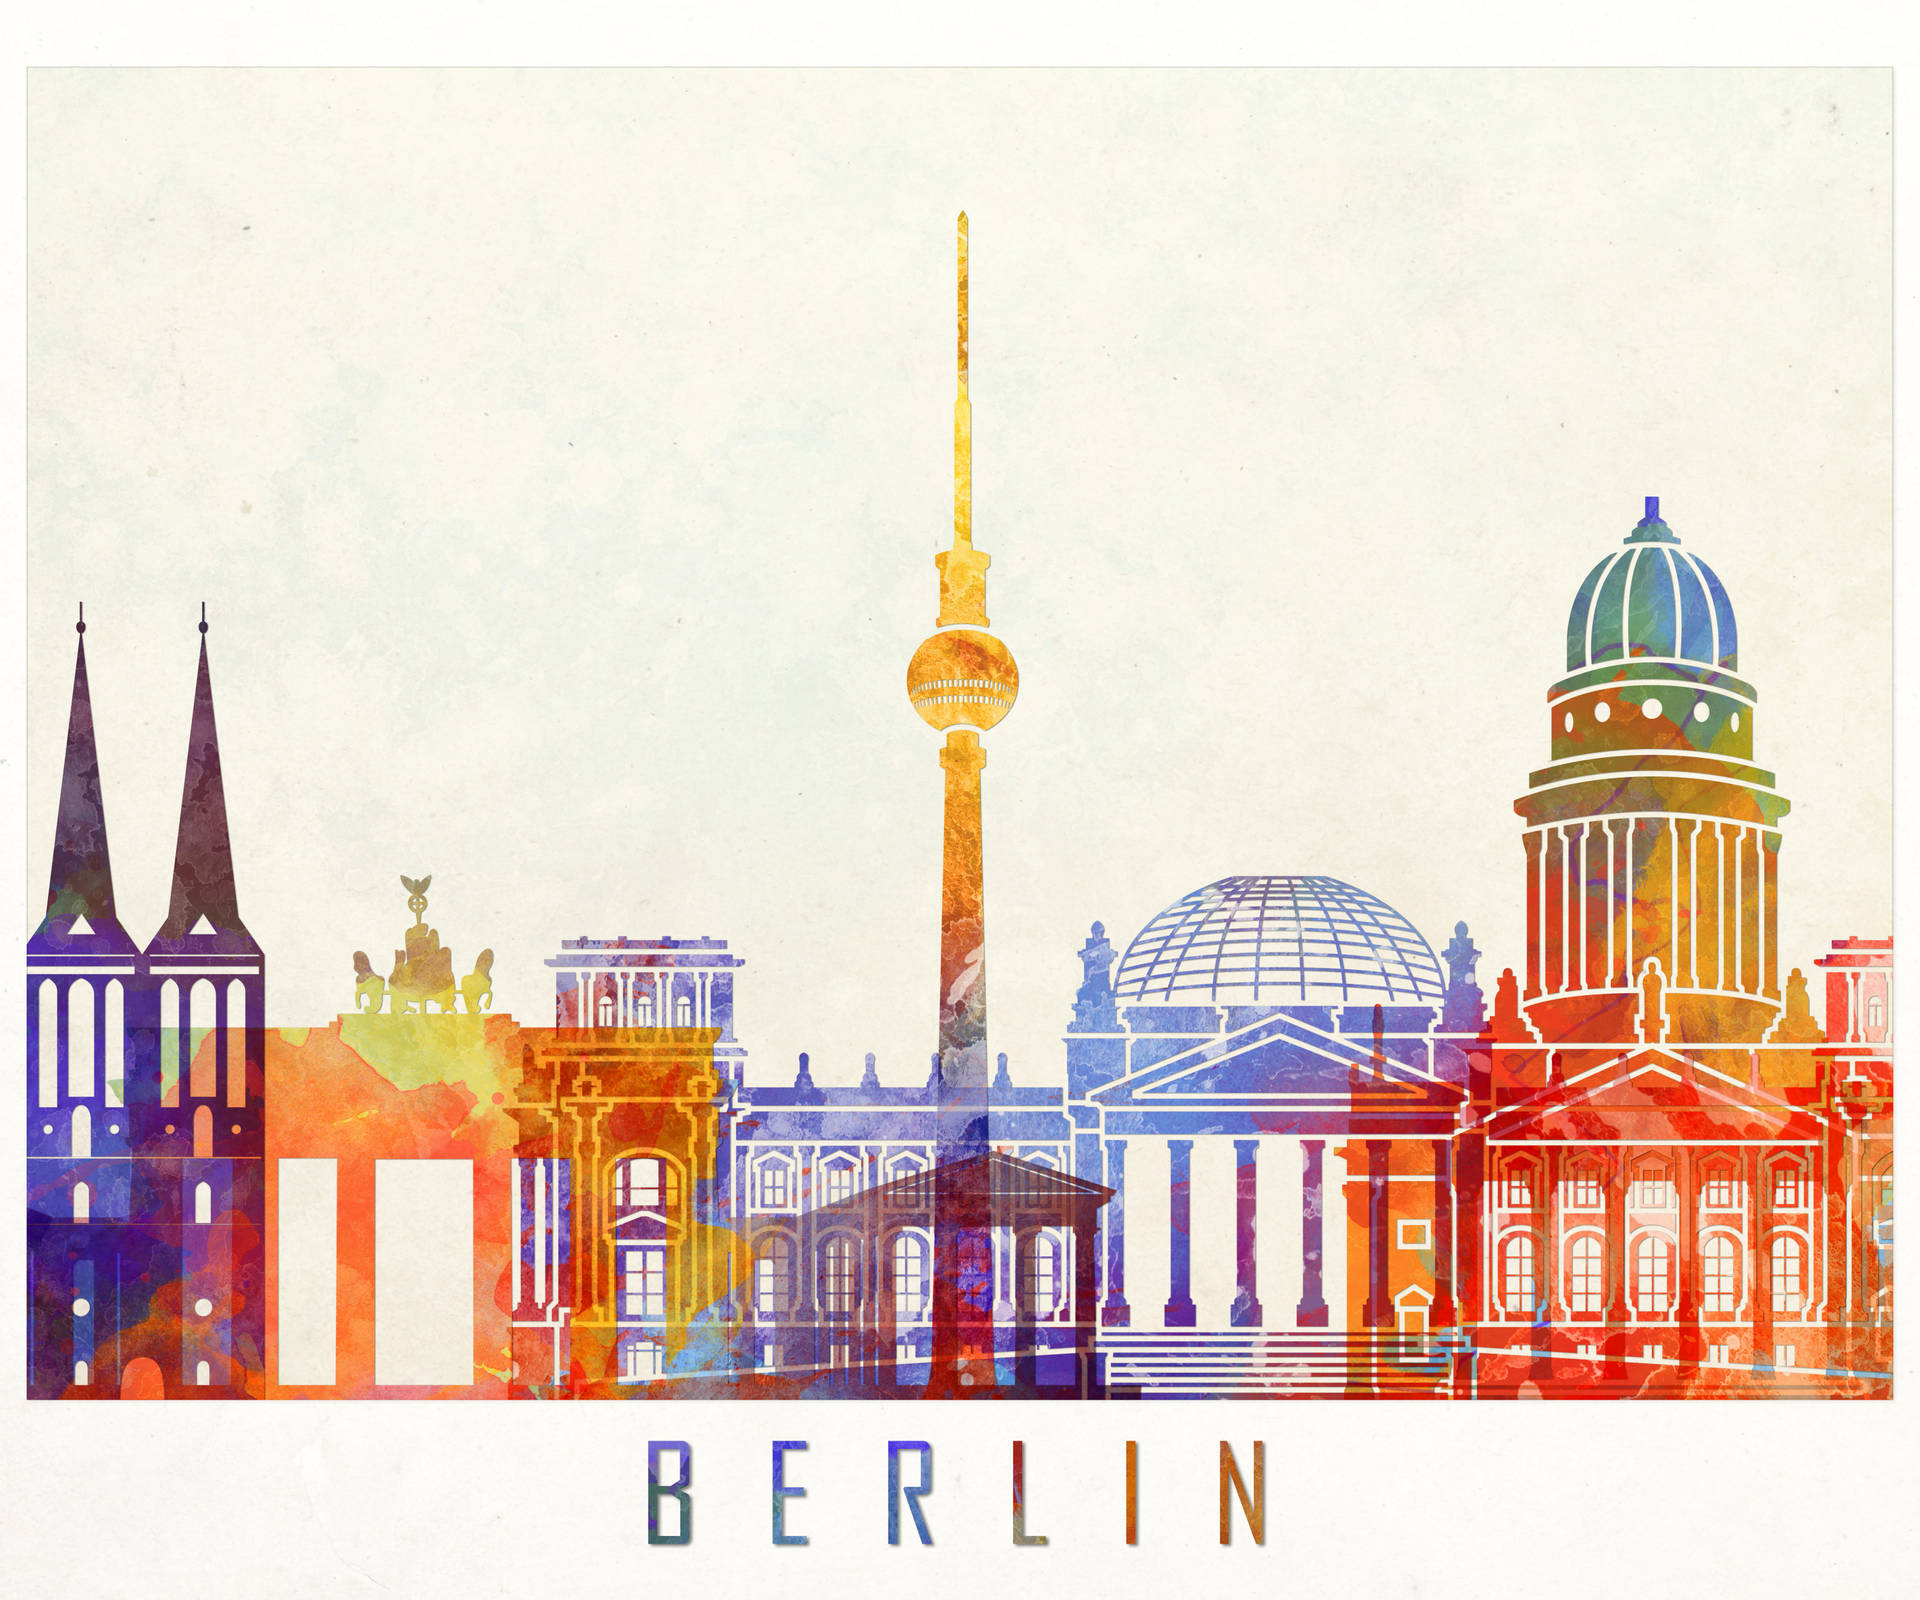 Berlin Tourists Spot Art Wallpaper